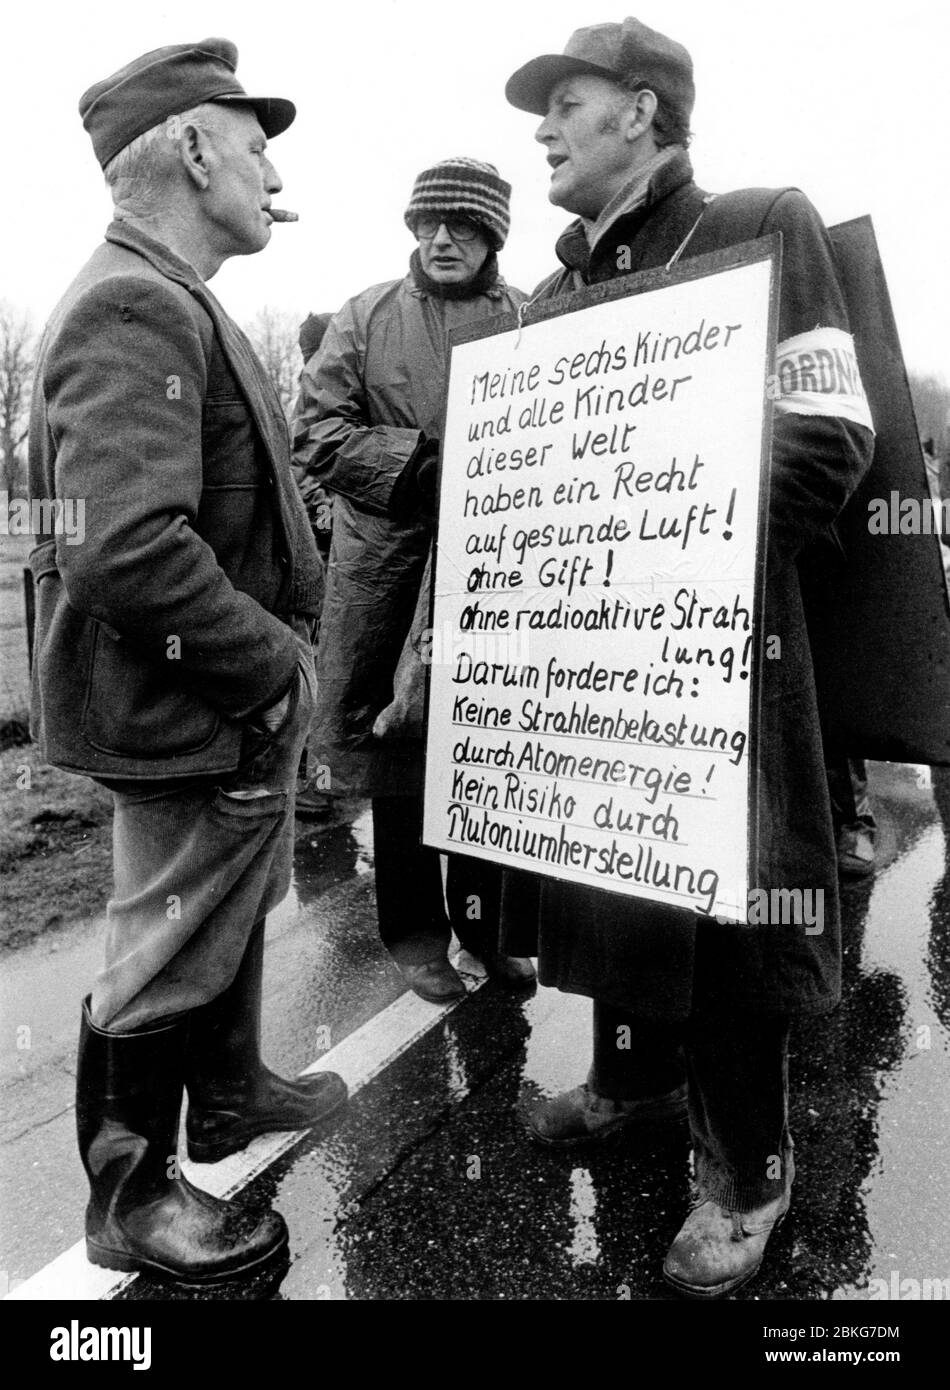 Gorleben, 25.-31.3.1979: Gorleben-Treck 1979, Demonstration gegen die Nutzung der Kernenergie, die sich gegen geplante Kernenergieanlagen bei Gorleben im Landkreis Lüchow-Dannenberg richtete. Der Treck von Bauern, Studenten und Atomkraftgegnern begann am 25. März 1979 im Wendland und endete als Abschlusskundgebung am 31. März 1979 in Hannover mit etwa 100.000 Teilnehmern   ---   Gorleben, Lower-Saxony, Germany. 25th to 31th March 1979 - Anti-nuclear trek from Gorleben to Hannover/Germany Stock Photo